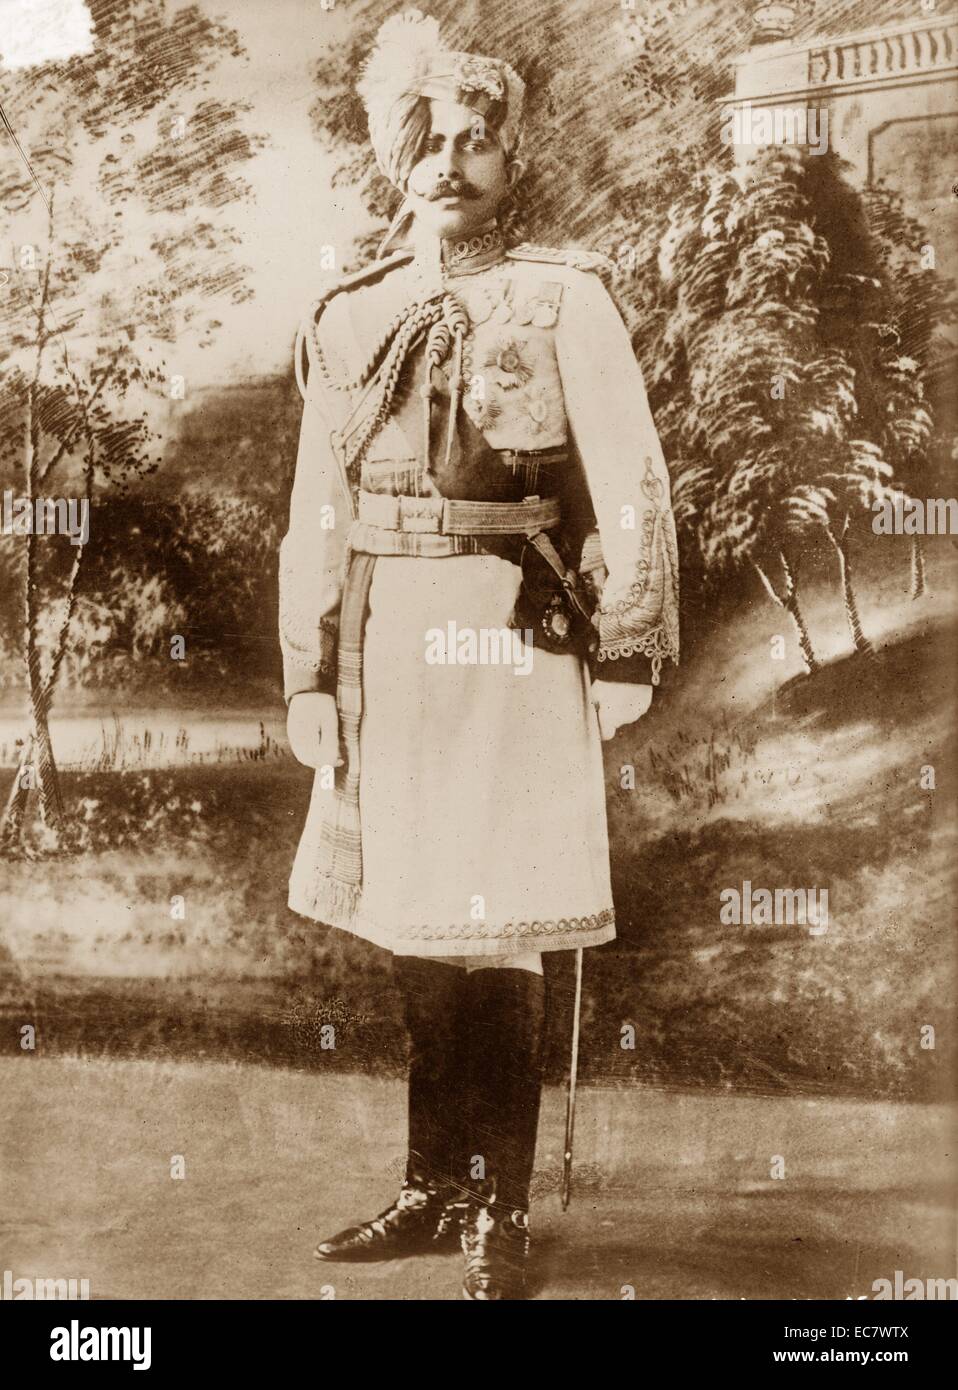 Le général Sir Ganga Singh (1880-1943), le Maharaja de l'état de Bikaner, Inde. Il a servi dans le Cabinet de guerre impérial britannique pendant la Première Guerre mondiale, comme son seul non anglo-états. Banque D'Images